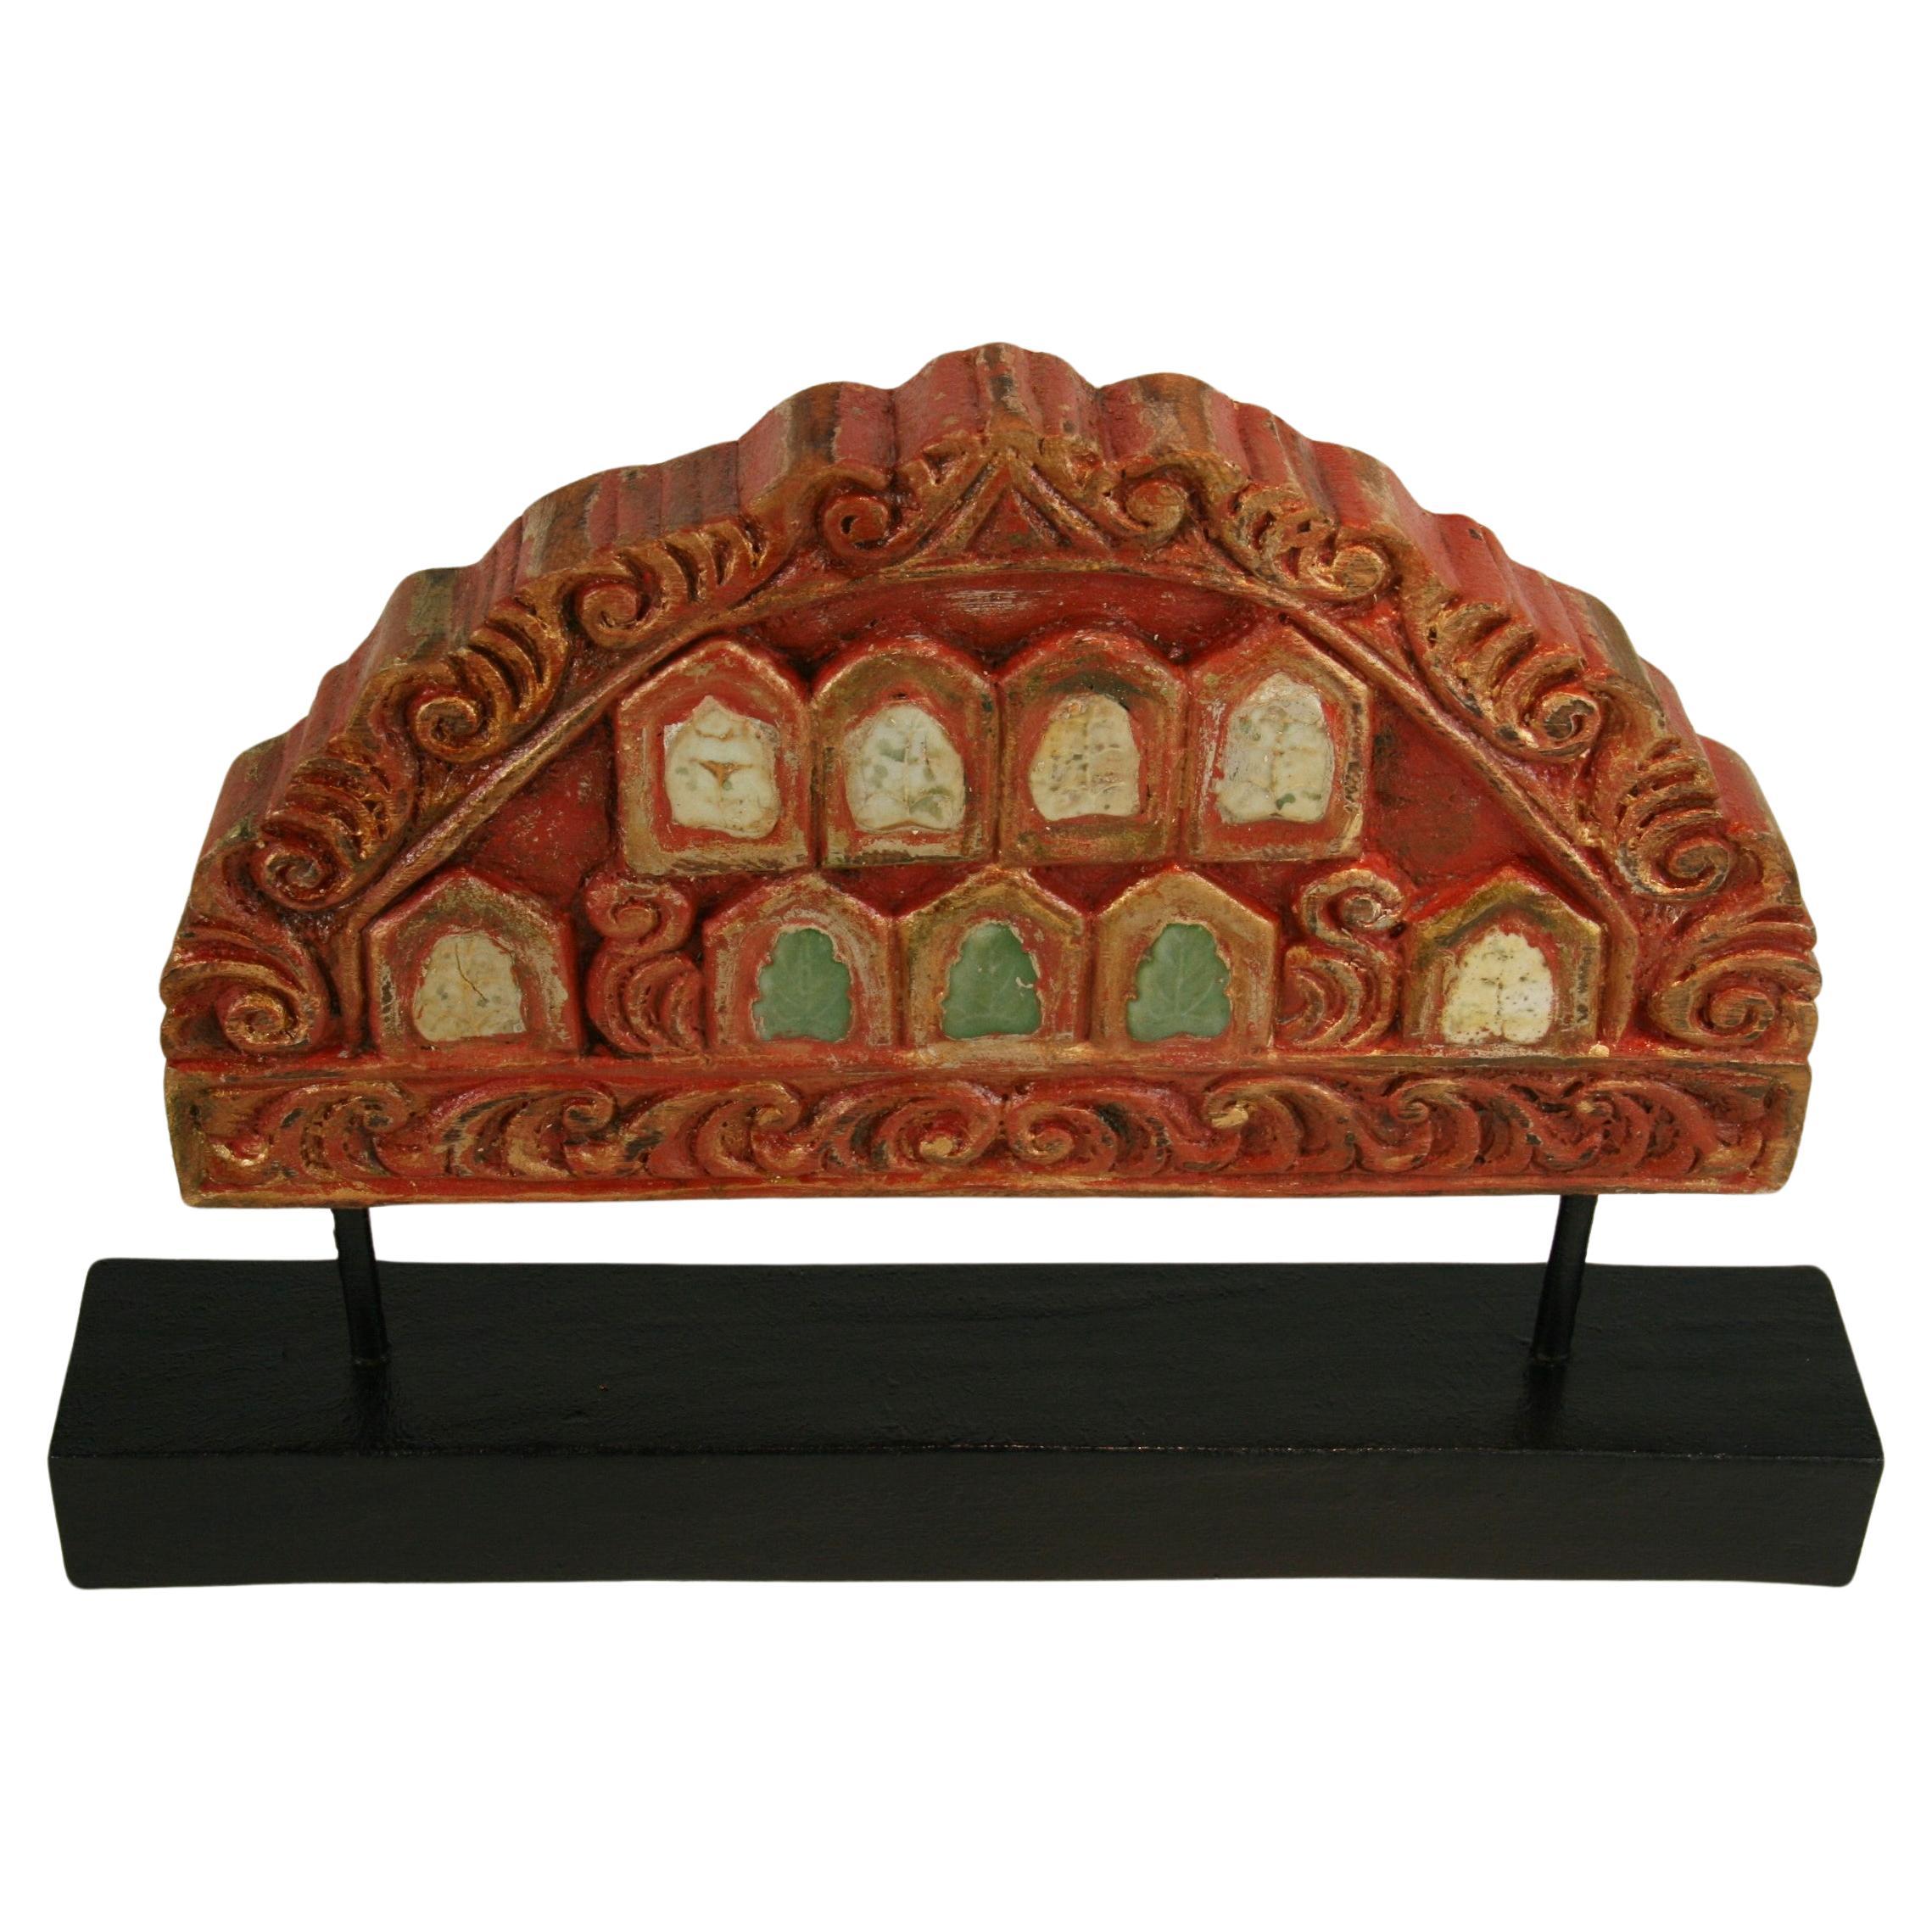 Architektonische Fragmente eines indischen Tempels mit Keramikintarsien